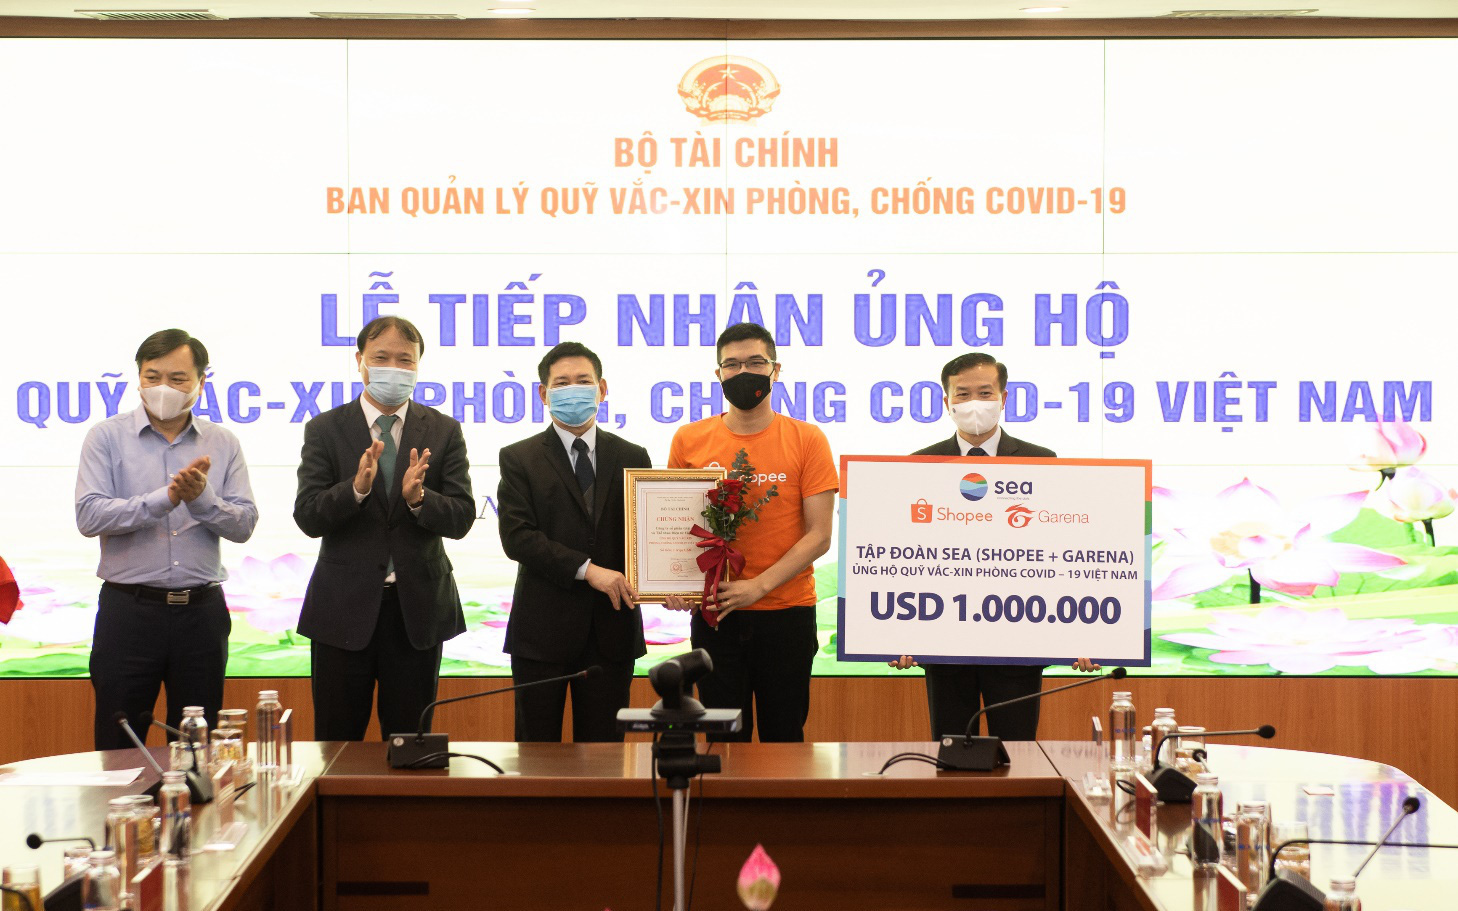 Shopee và Garena Việt Nam ủng hộ 1 triệu USD cho Quỹ vắc-xin phòng, chống Covid-19